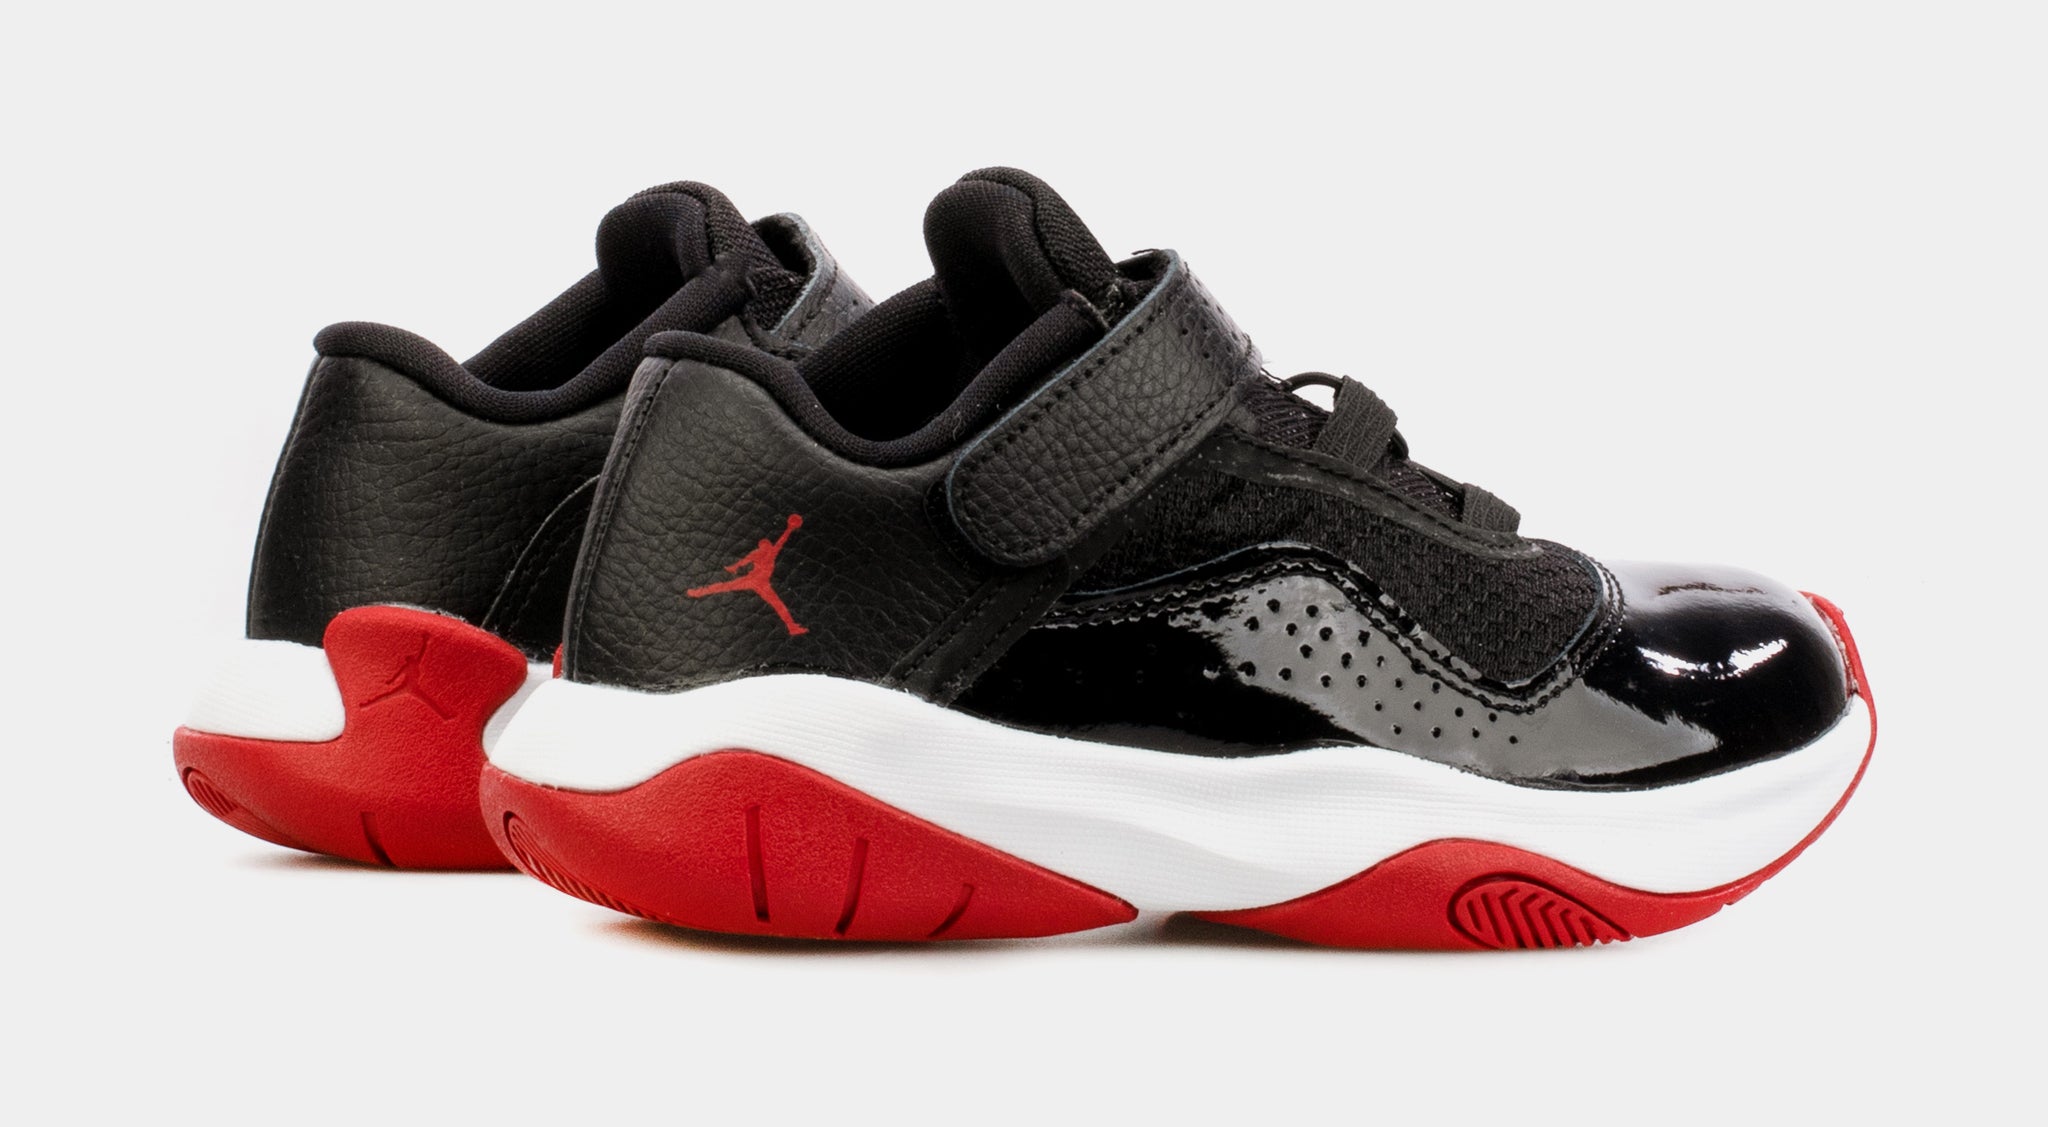 Jordan Air Jordan 11 CMFT Low Preschool Basketball Shoes Red Black ...